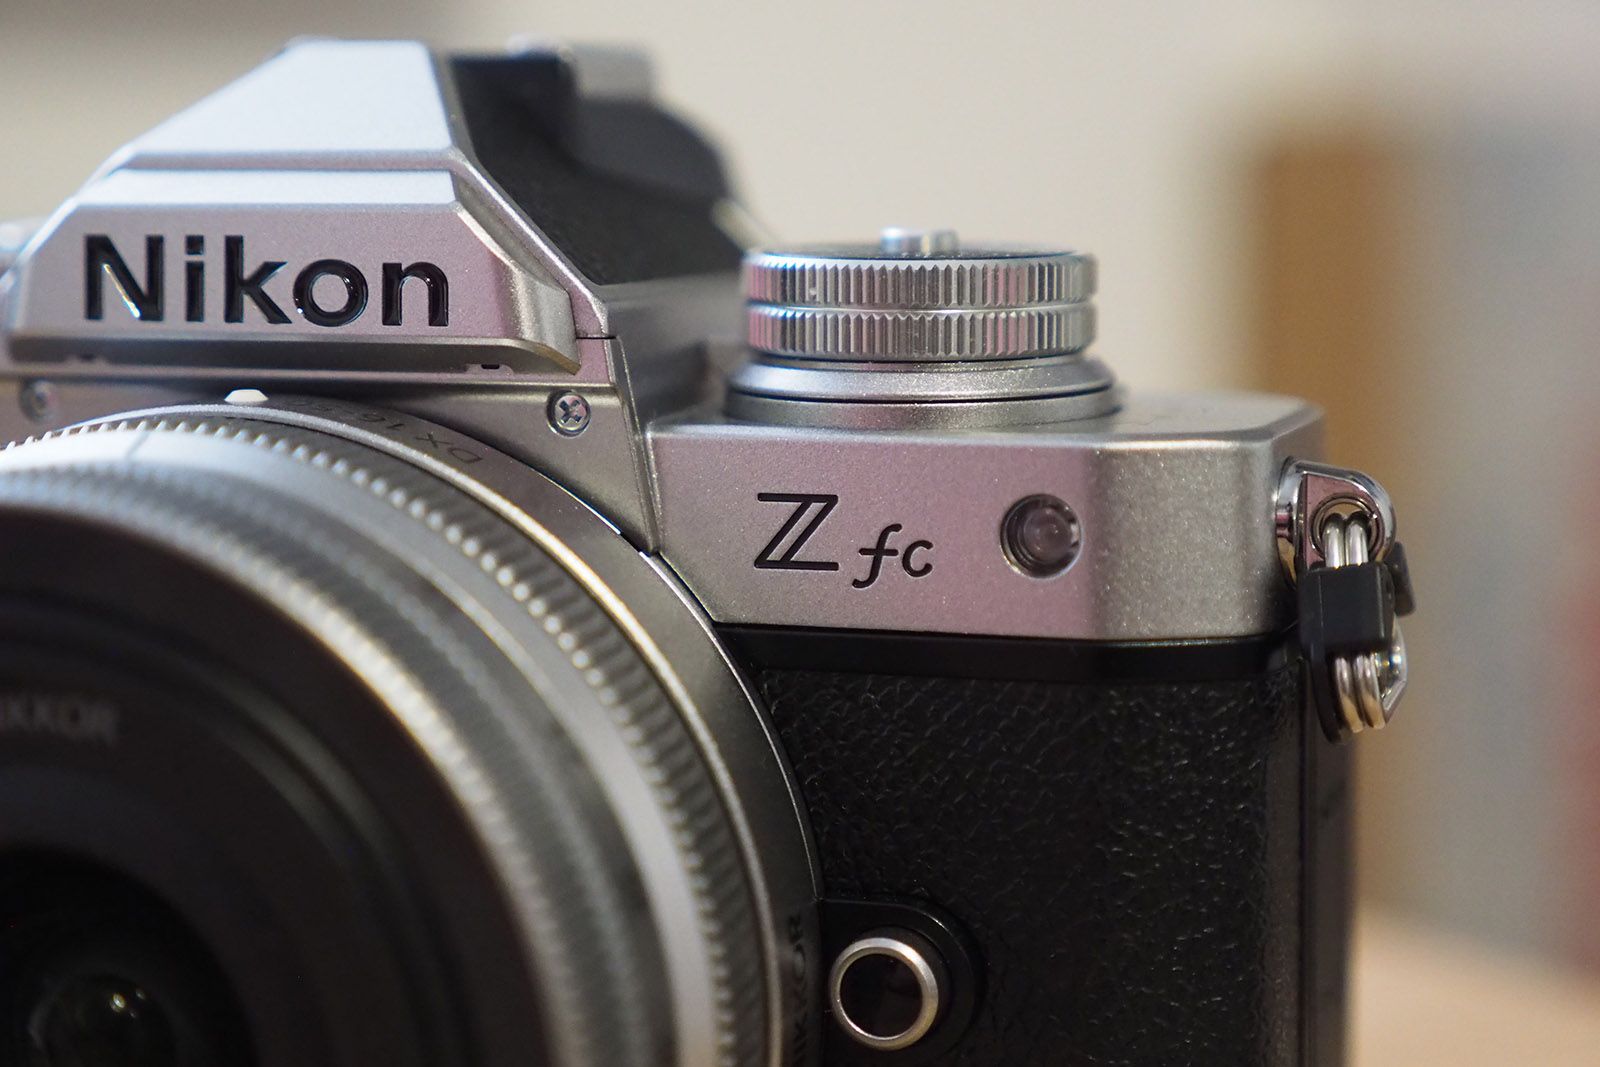 Nikon Z Fc review photo 9